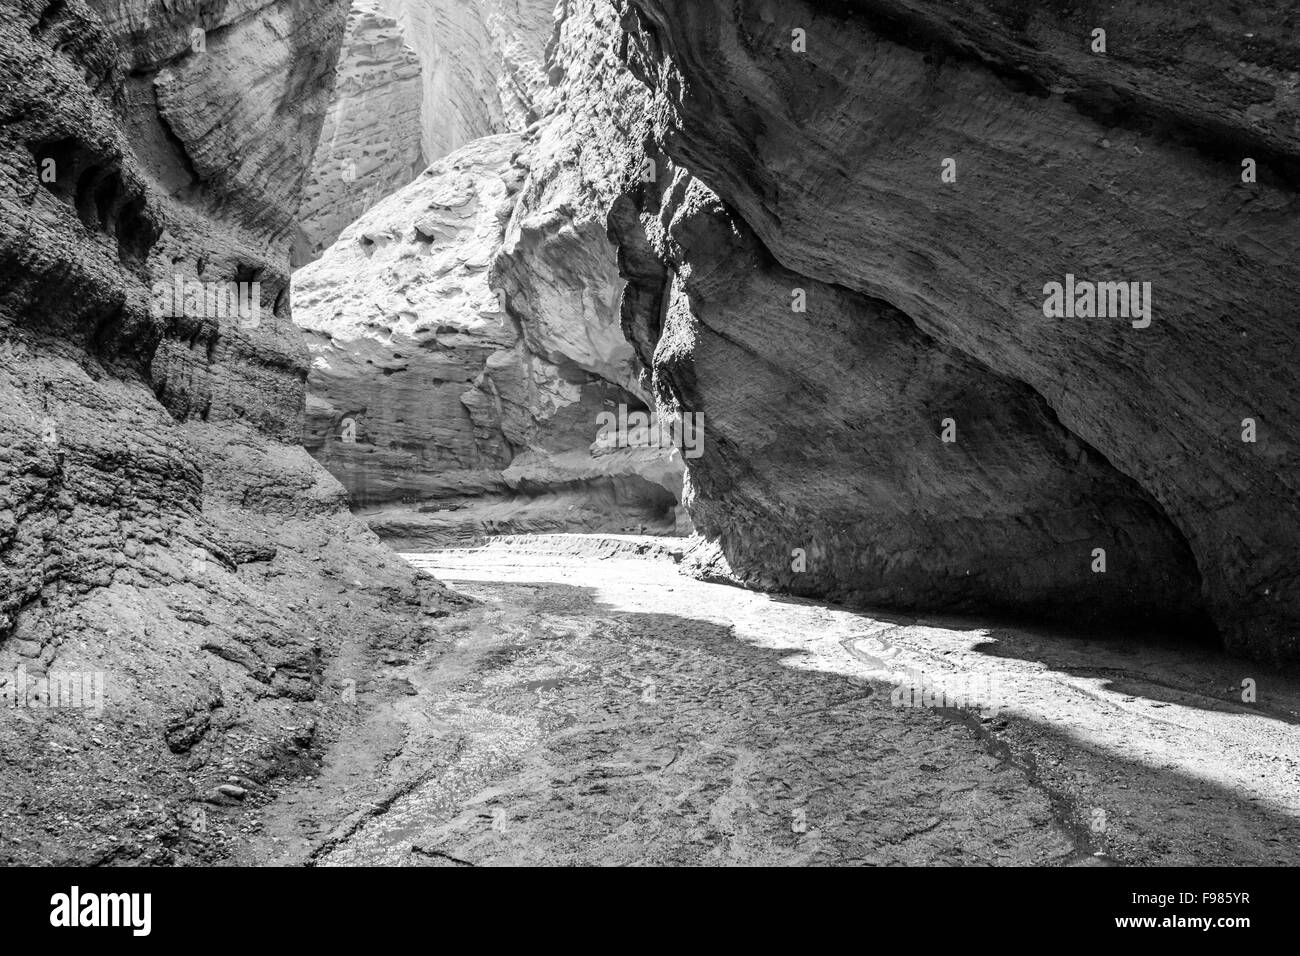 Sortir de la red hill canyon dans le Xinjiang chine tourné en noir et blanc Banque D'Images